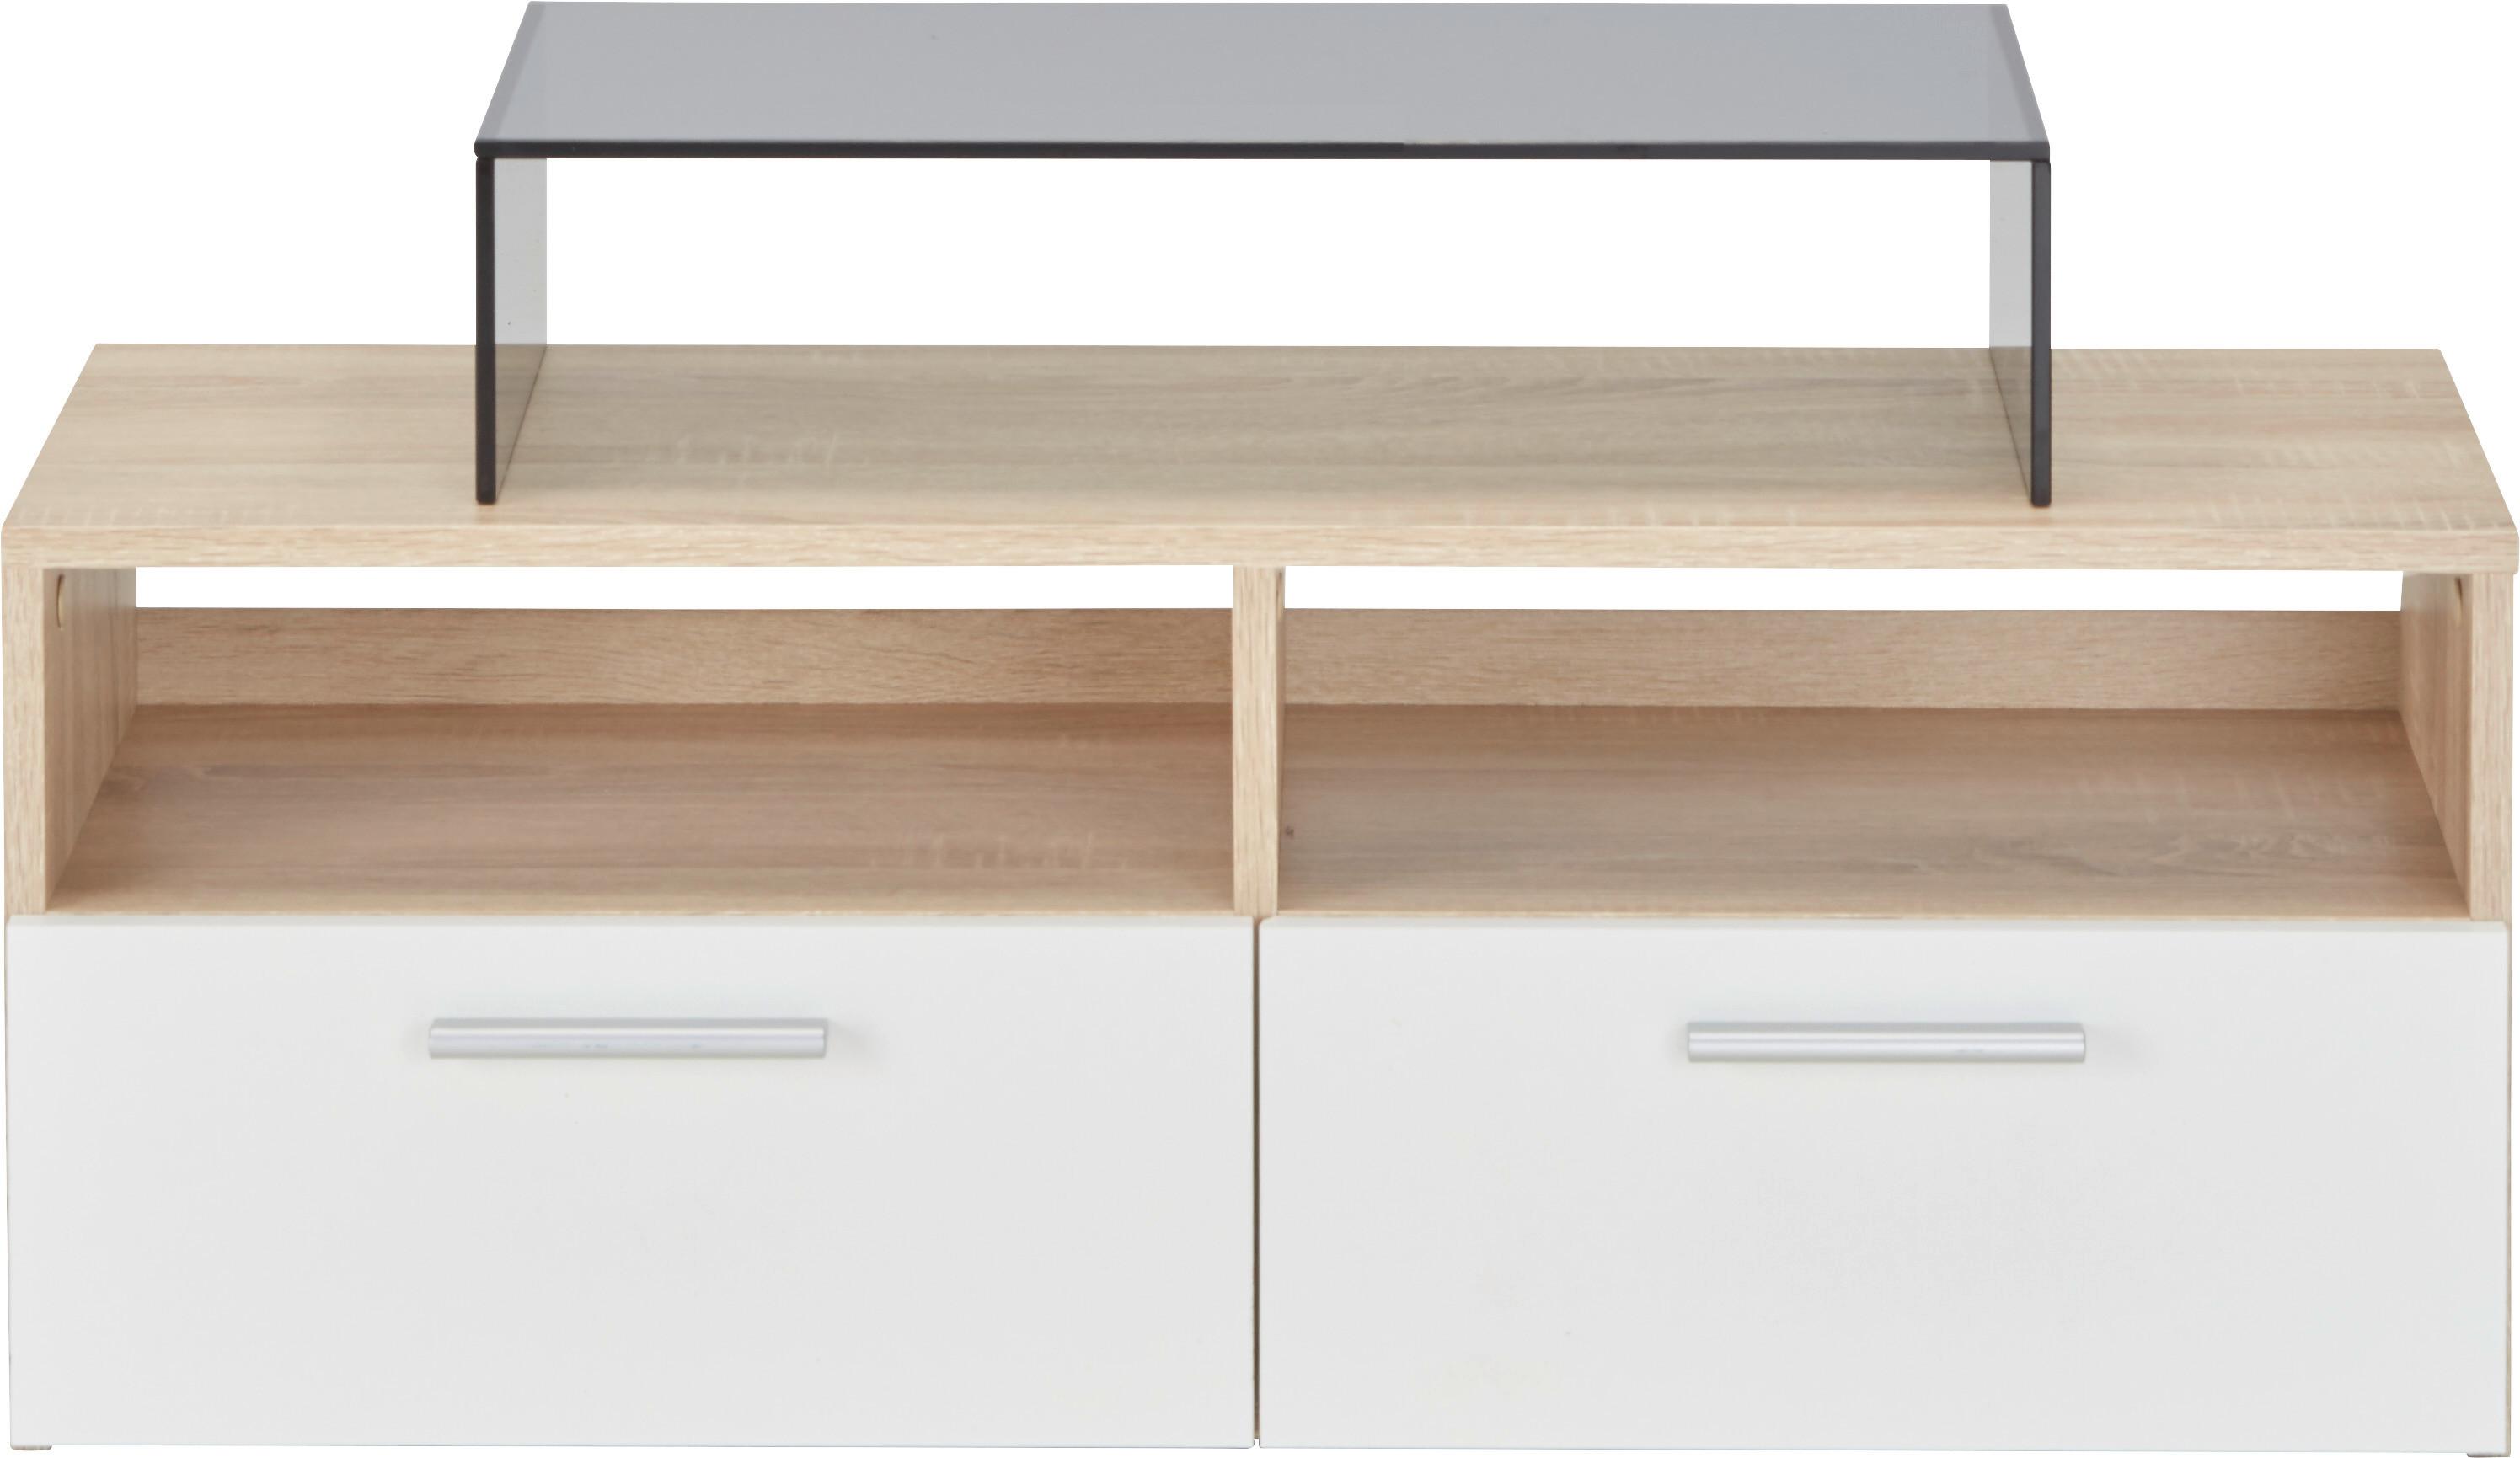 Lowboard in Weiß/Eichefarben - Eichefarben/Silberfarben, MODERN, Holzwerkstoff/Kunststoff (95/35/36cm) - Modern Living